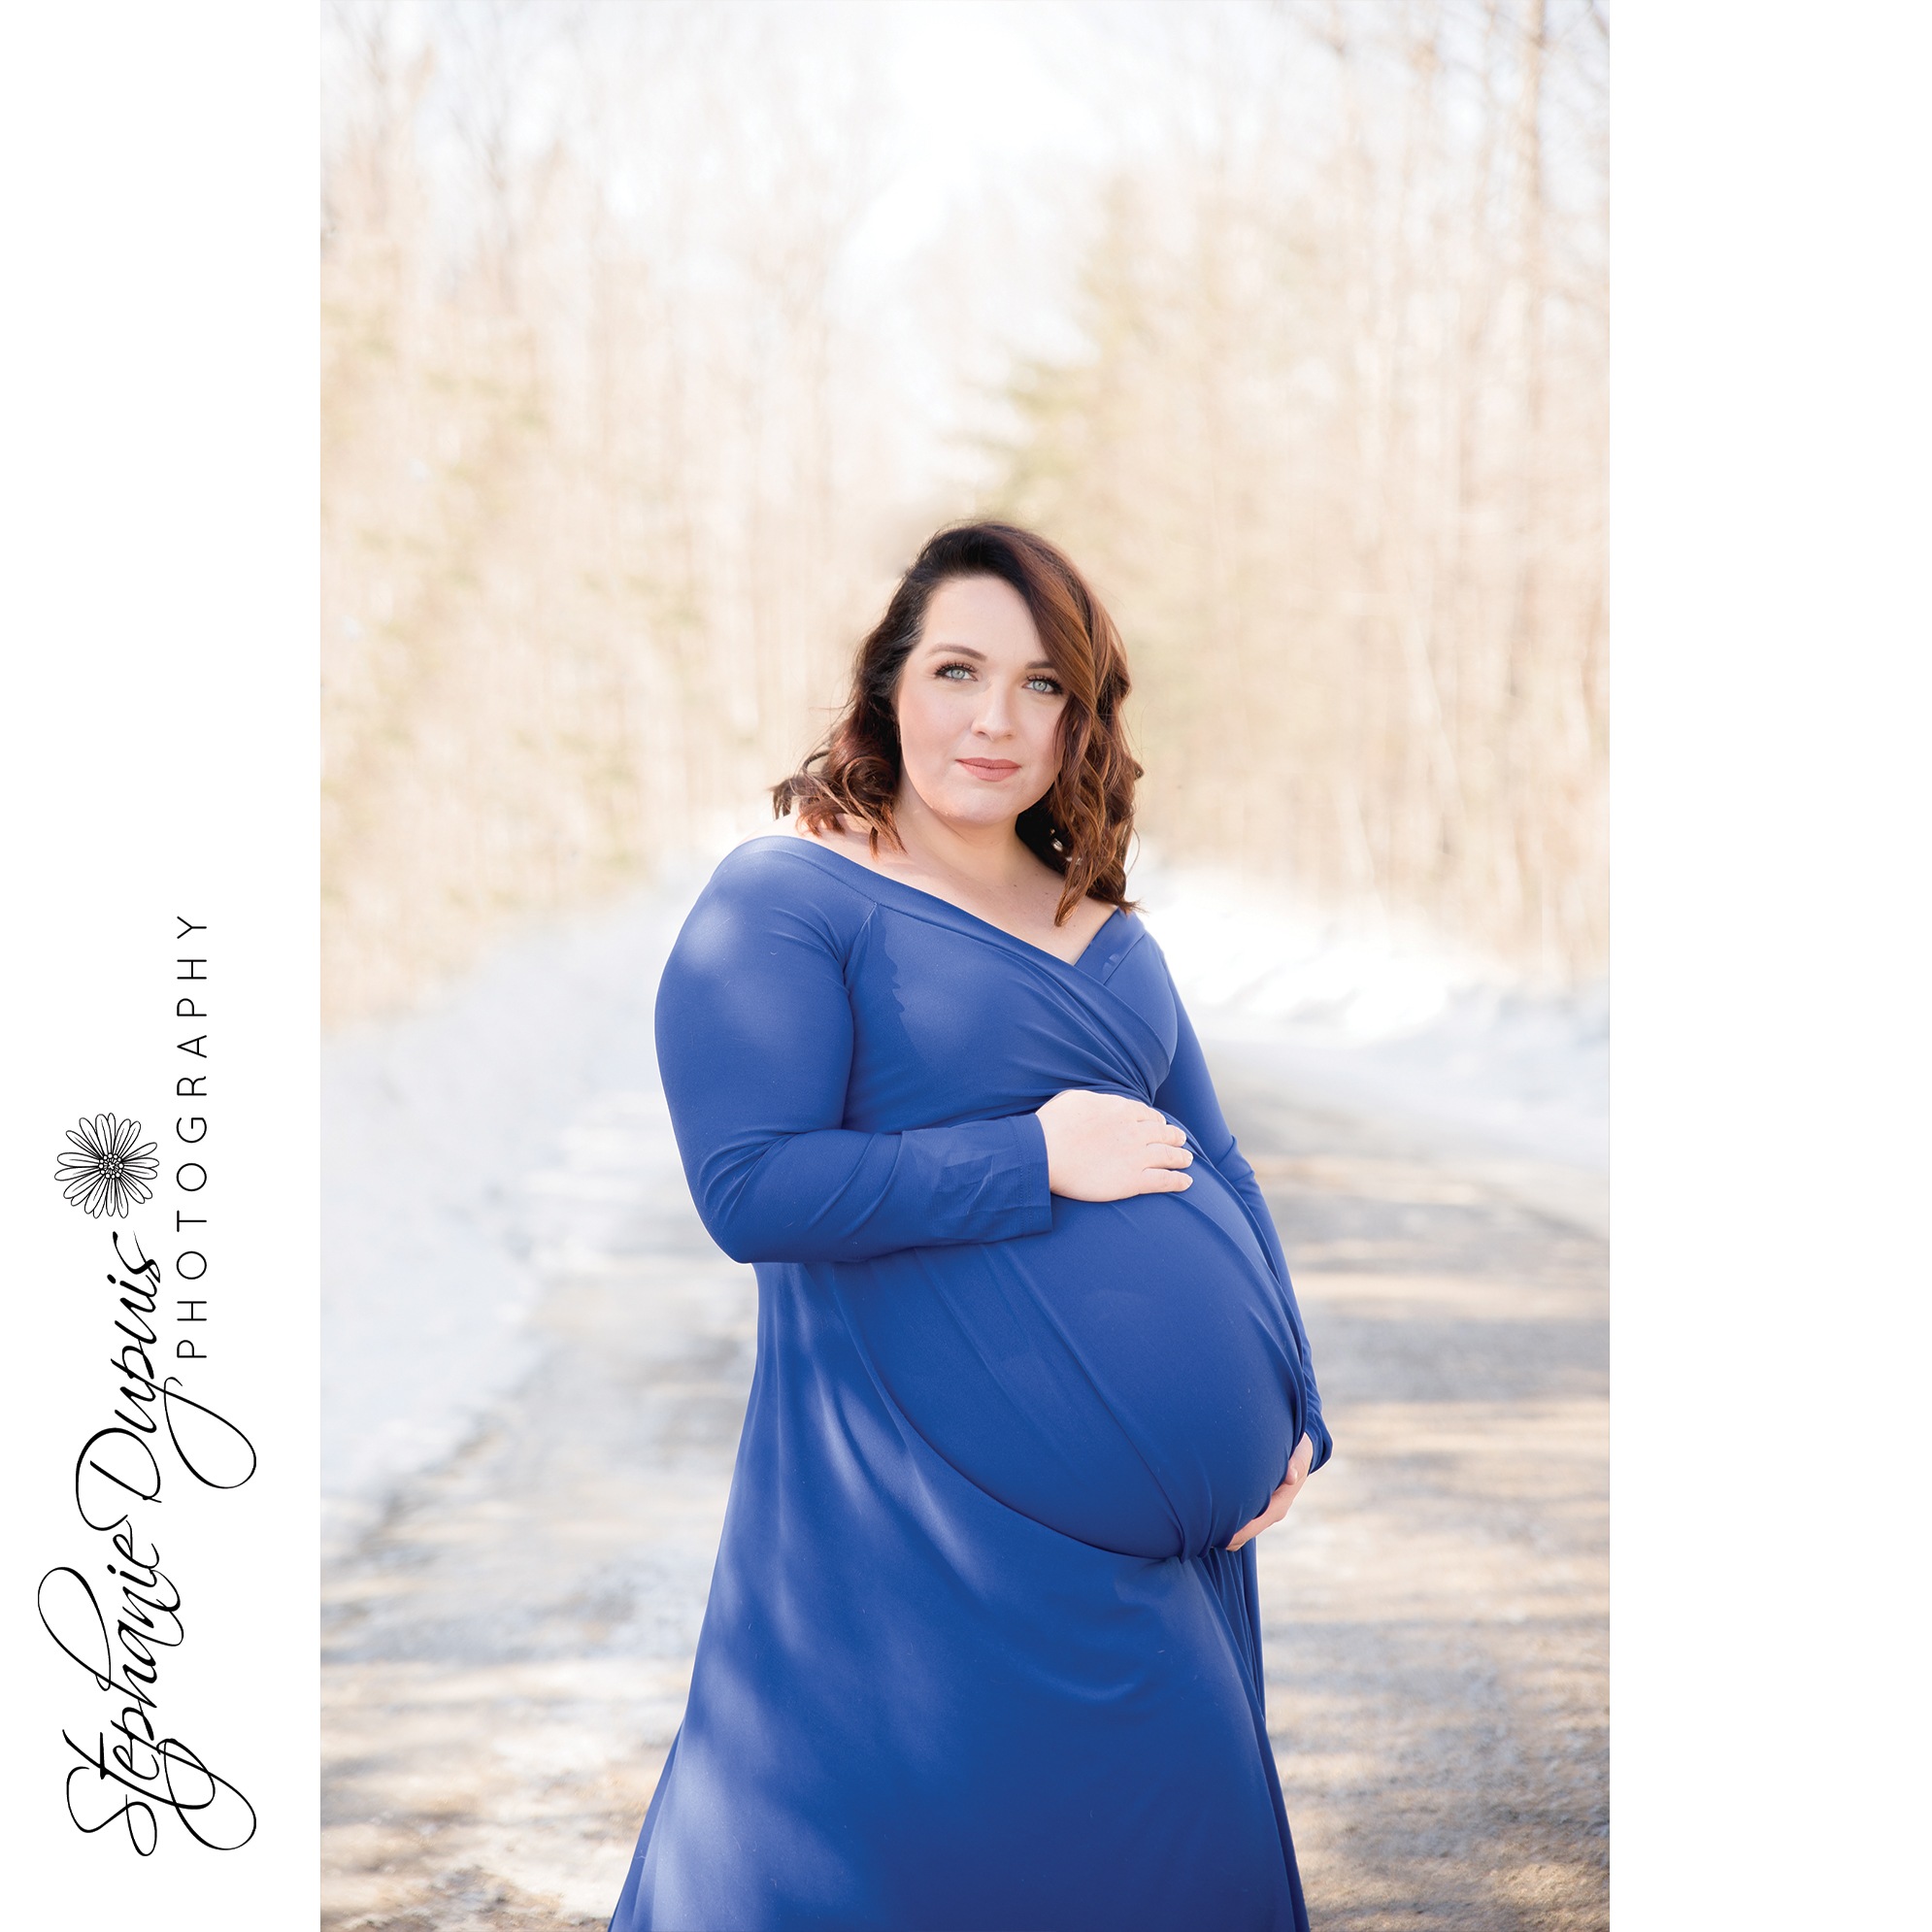 Jessica Maternity 1009 - Portfolio: Jessica - Maternity Session